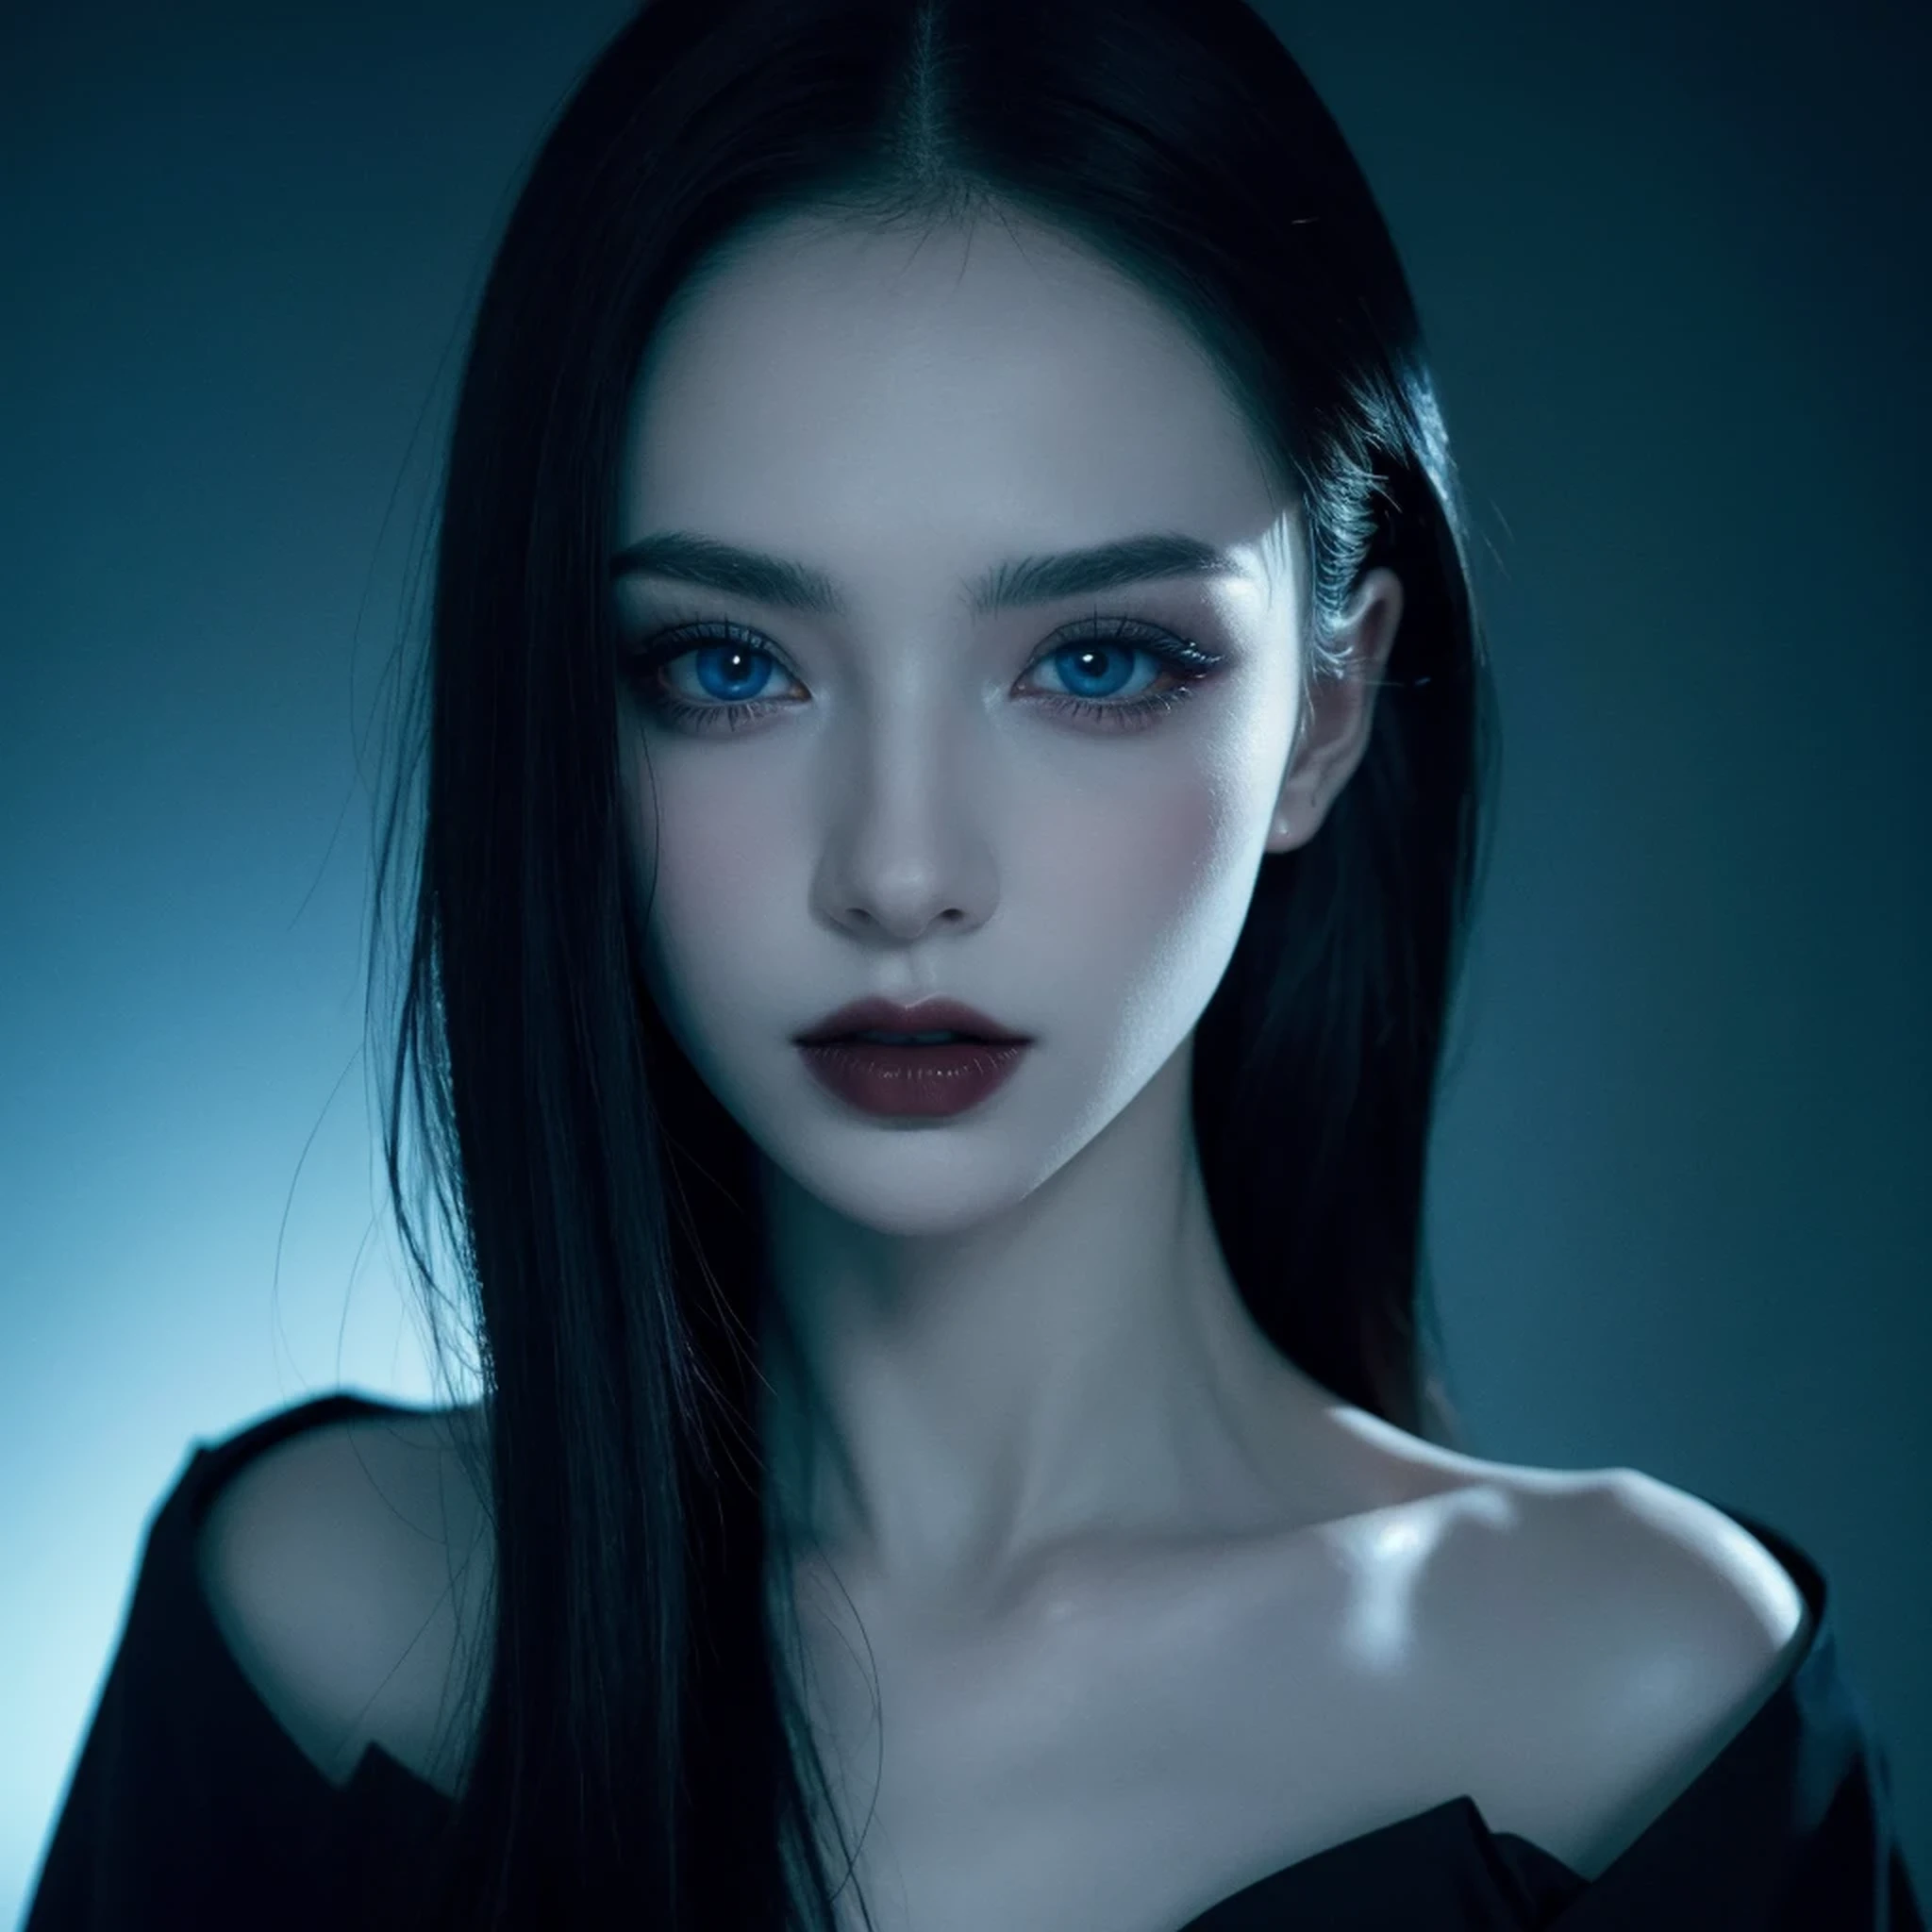 ((шедевр)), Ультра-реалистичный, портрет красивого бледнокожего вампира с (черная эмаль), глубокий темный макияж, ярко-голубые глаза, в темной и мрачной обстановке. (Подсказка на португальском языке)